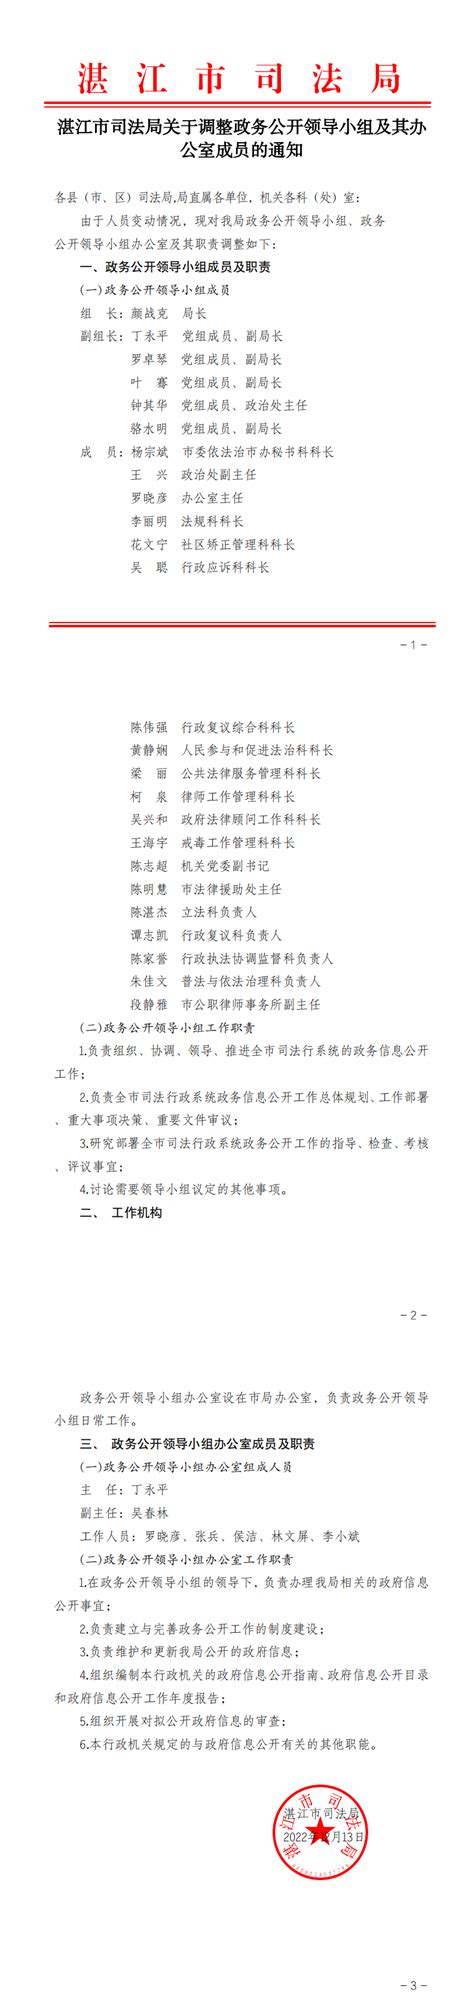 湛江市司法局关于调整政务公开领导小组及其办公室成员的通知_湛江市人民政府门户网站